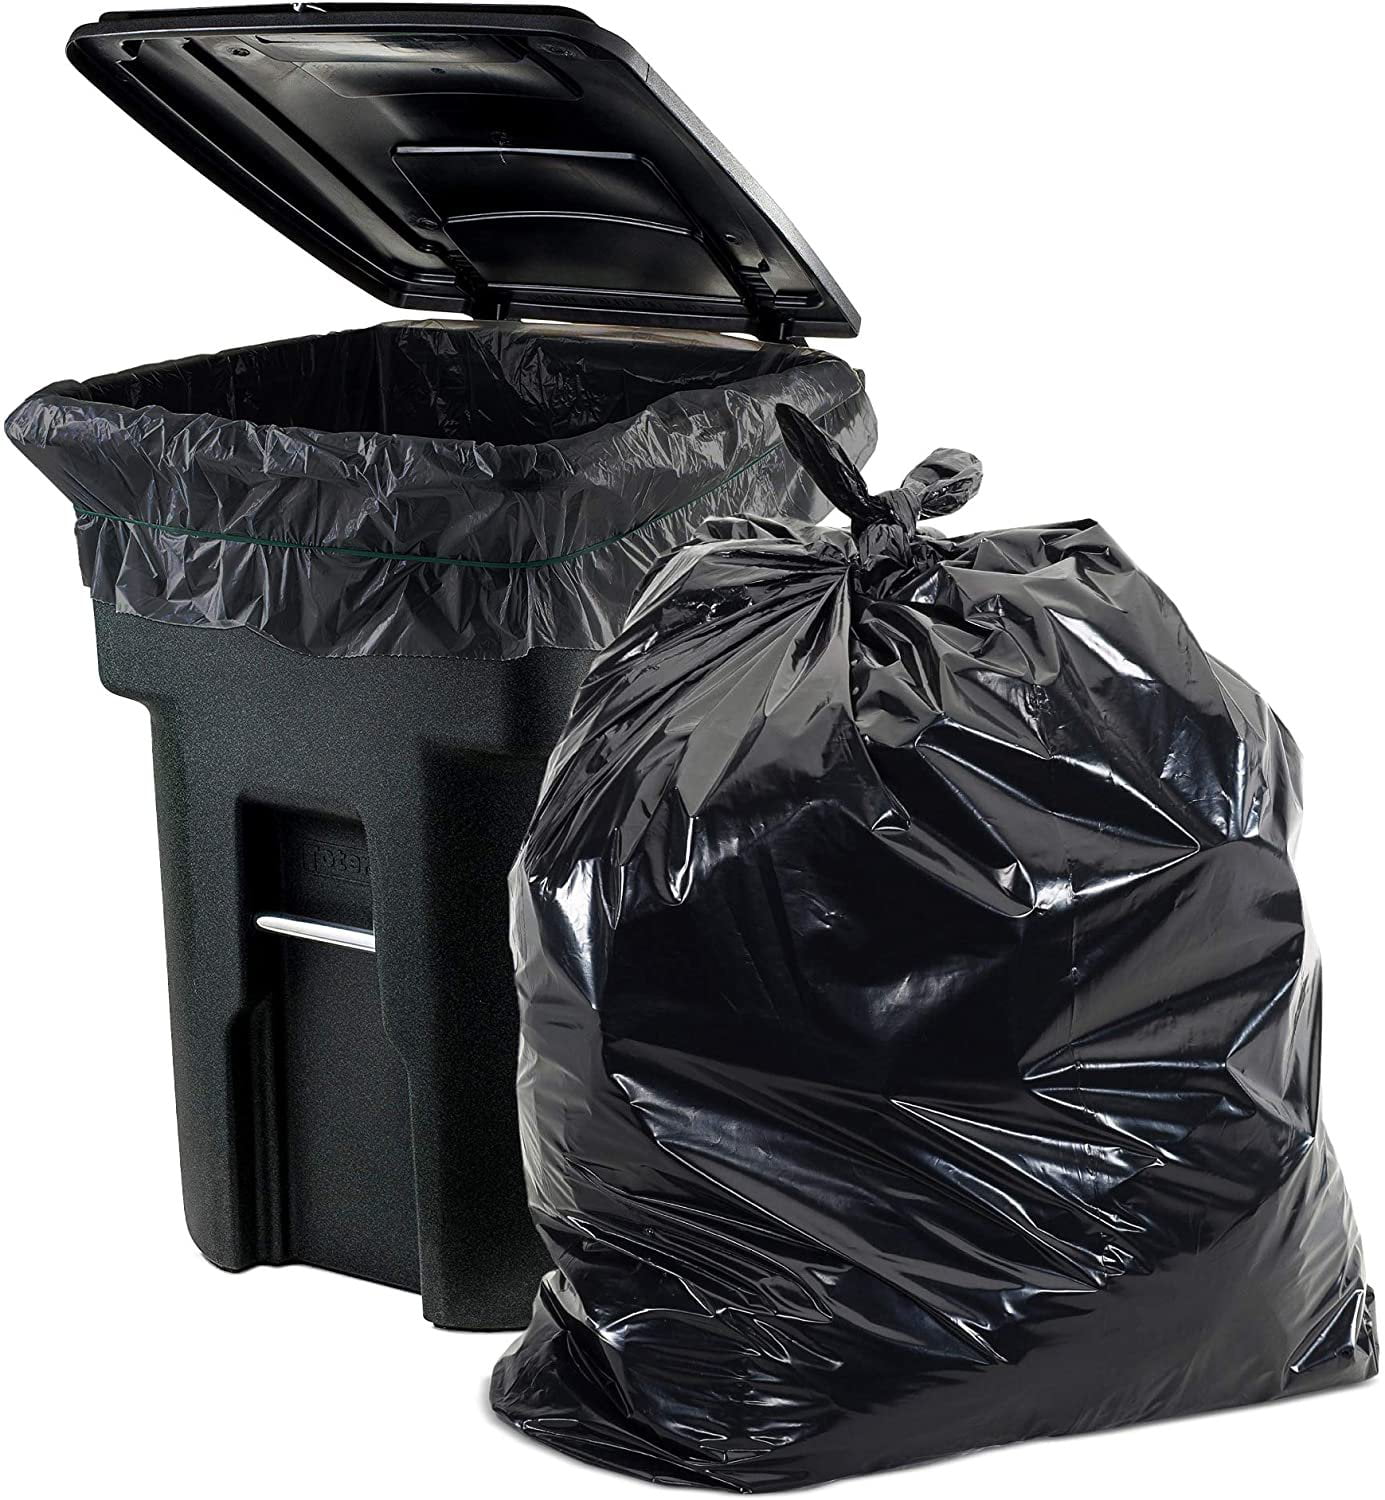 55-60 Gallon Clear Trash Bags 38x58 2 Mil 100 Bags-2282